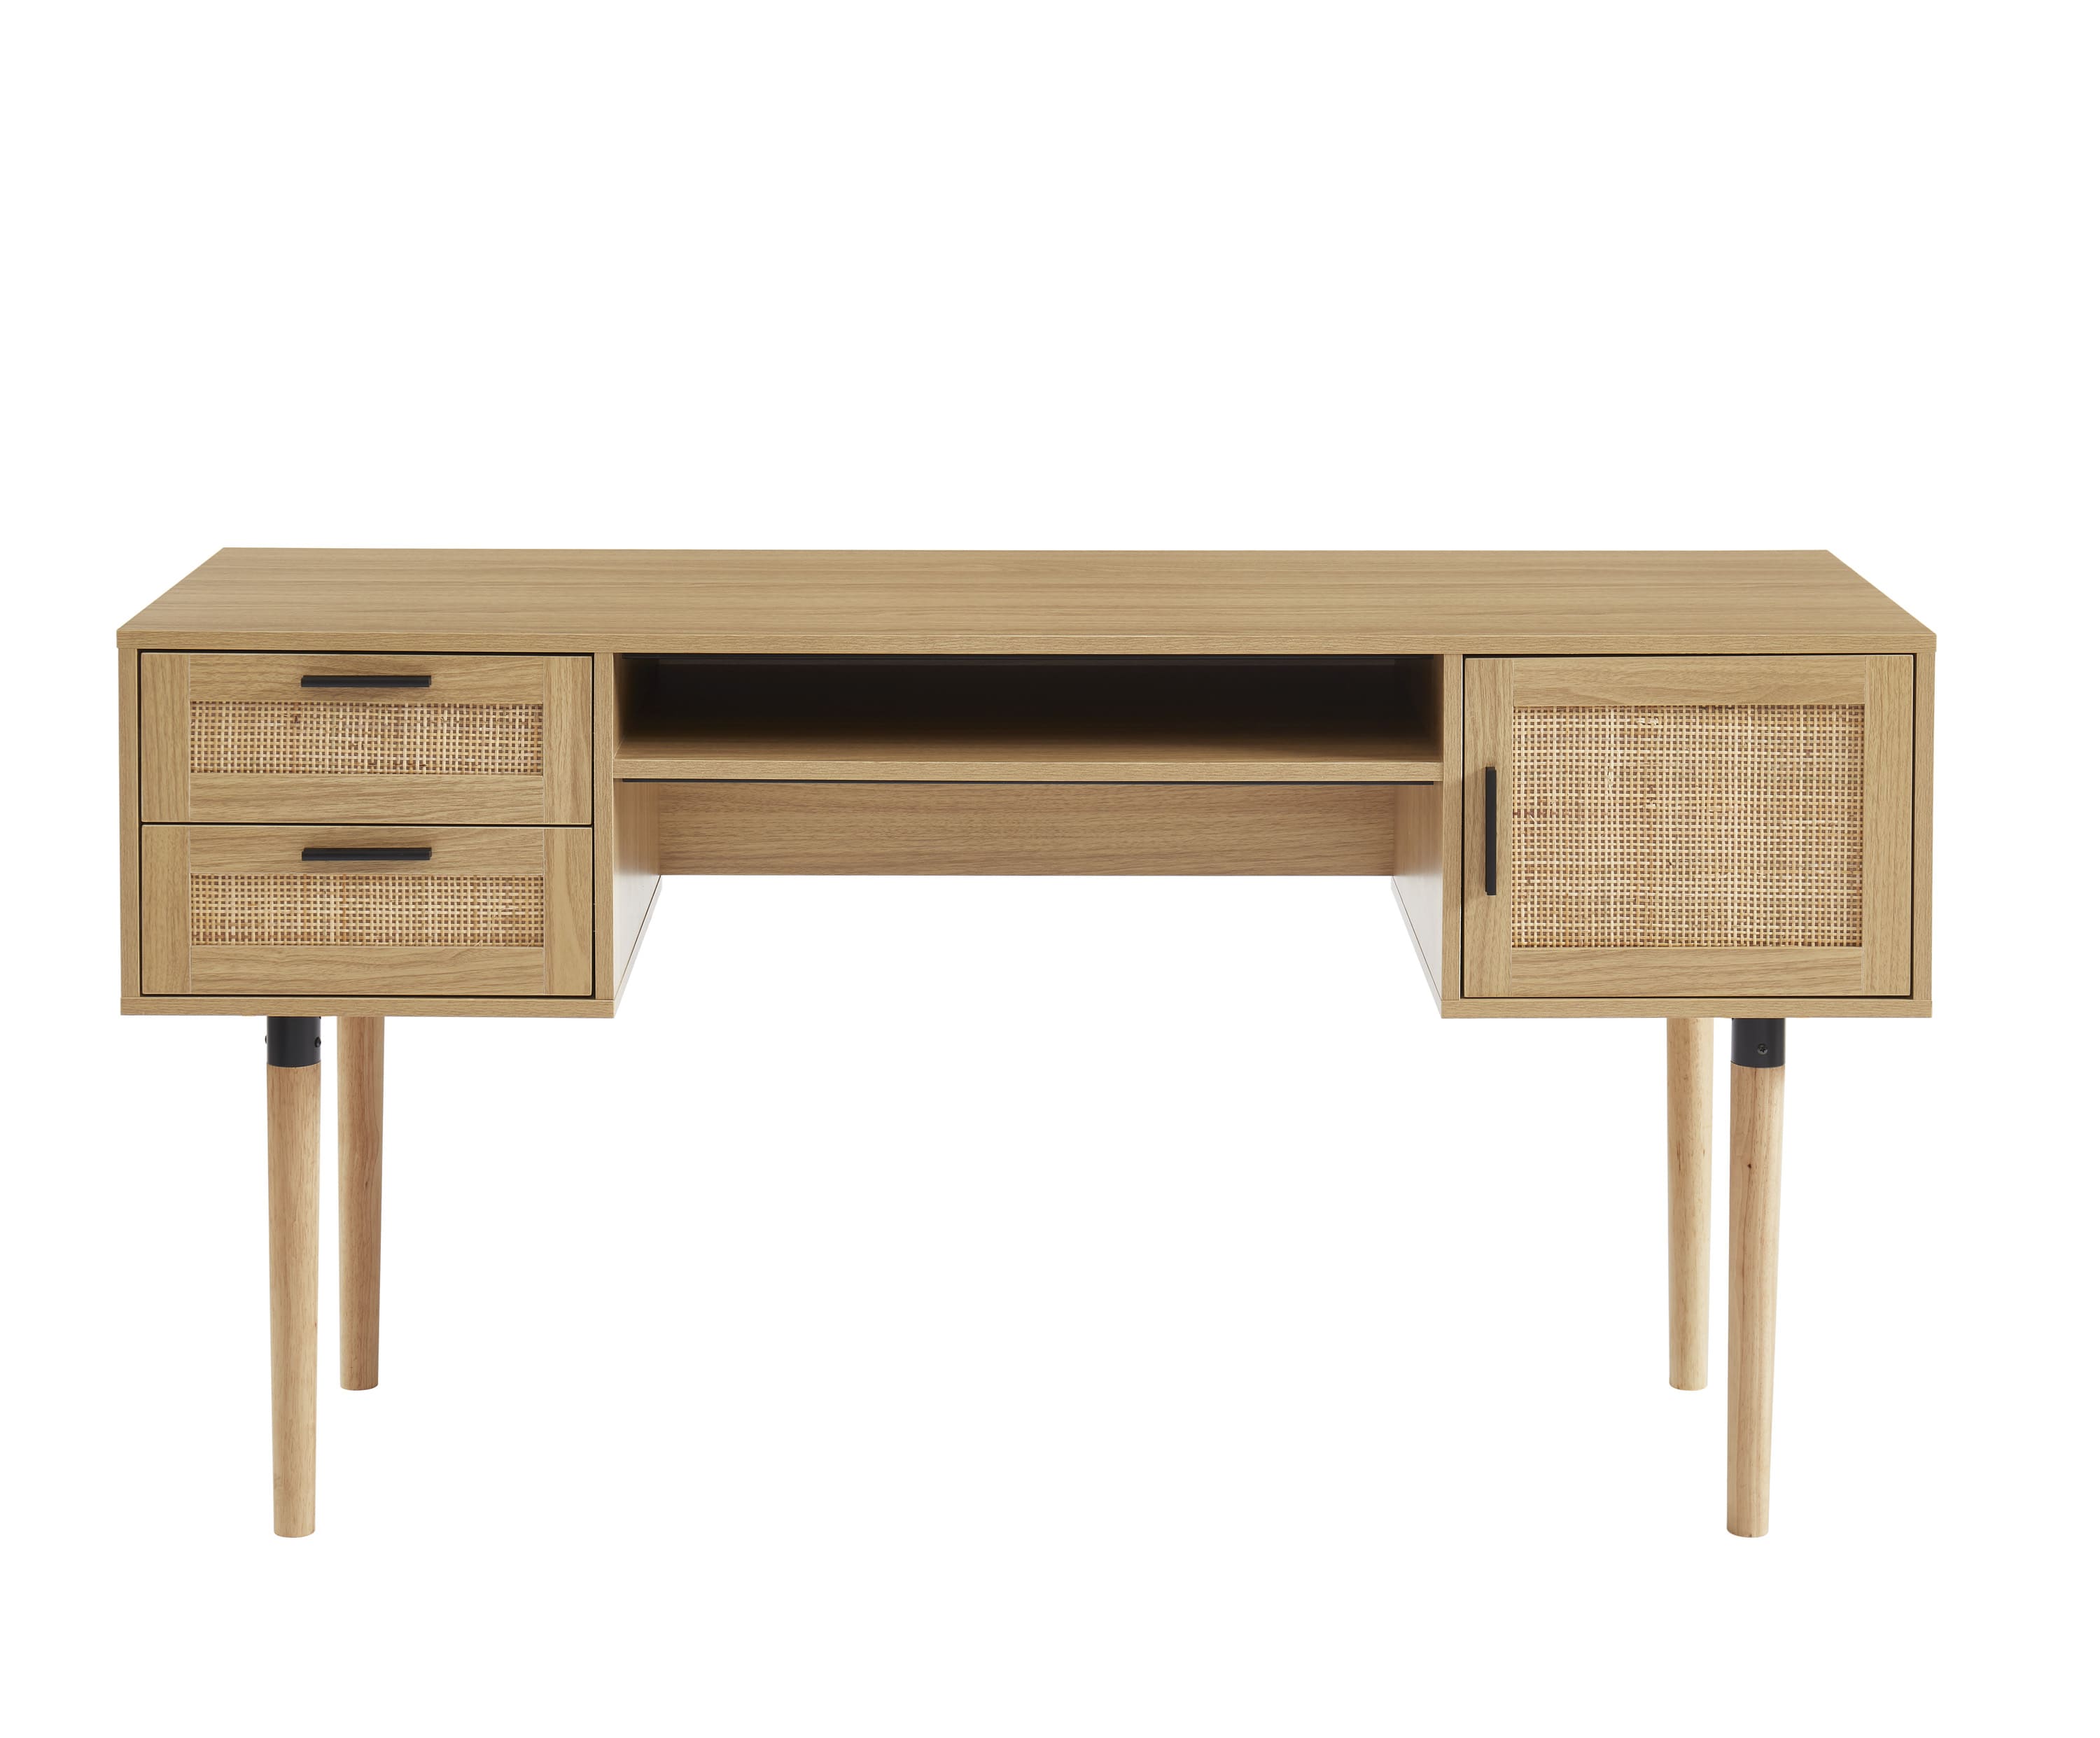 Petit bureau droit design BAKUS en bois et métal noir - 120x60 cm